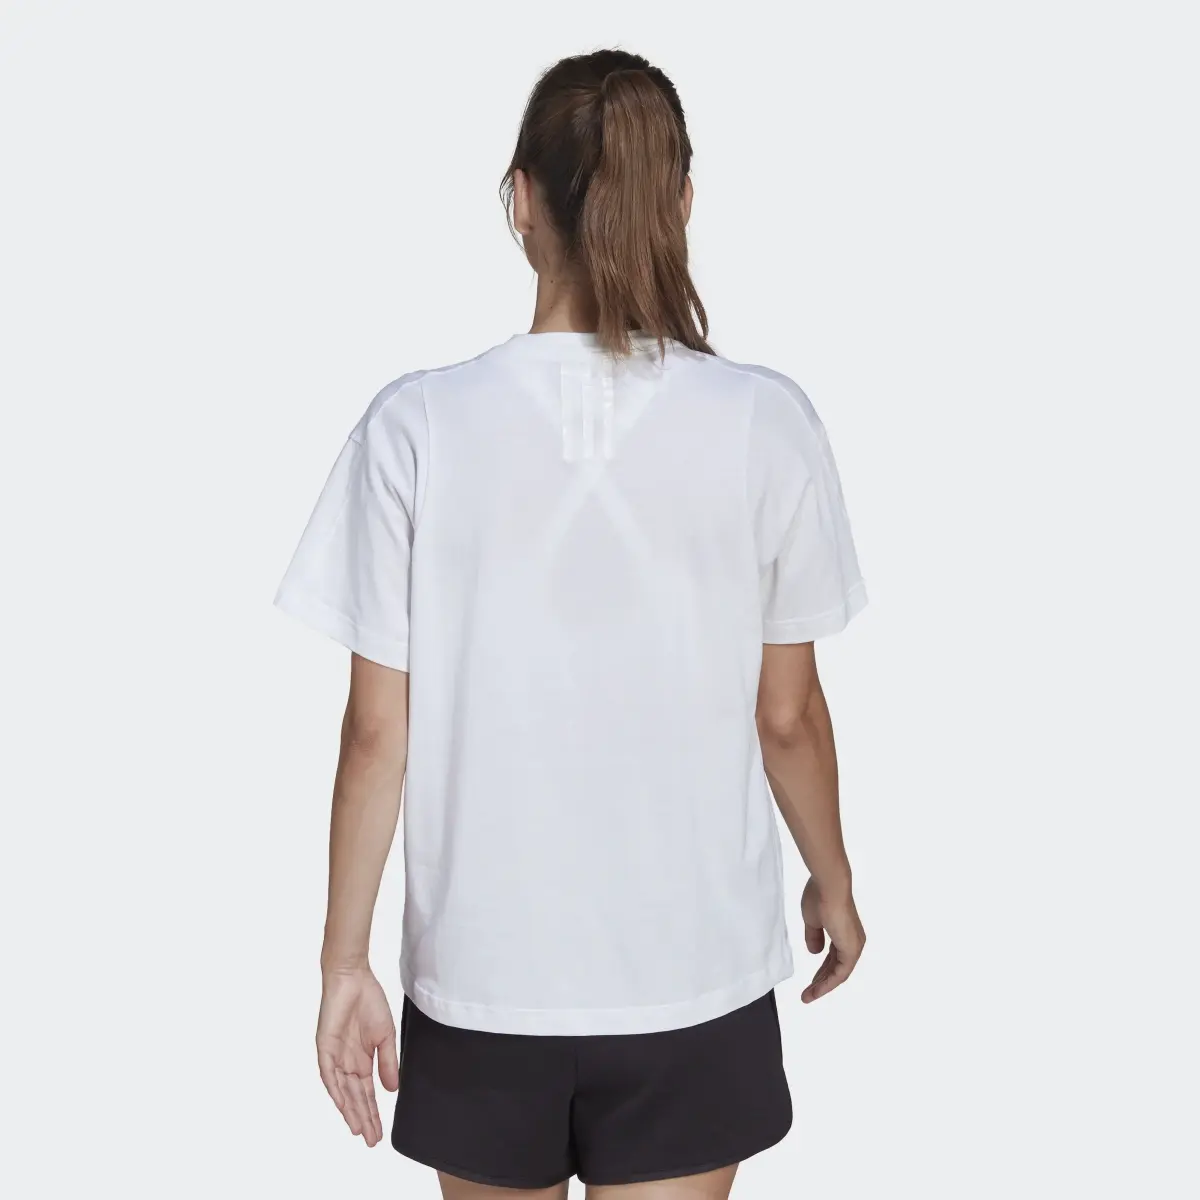 Adidas x Karlie Kloss Crop T-Shirt. 3